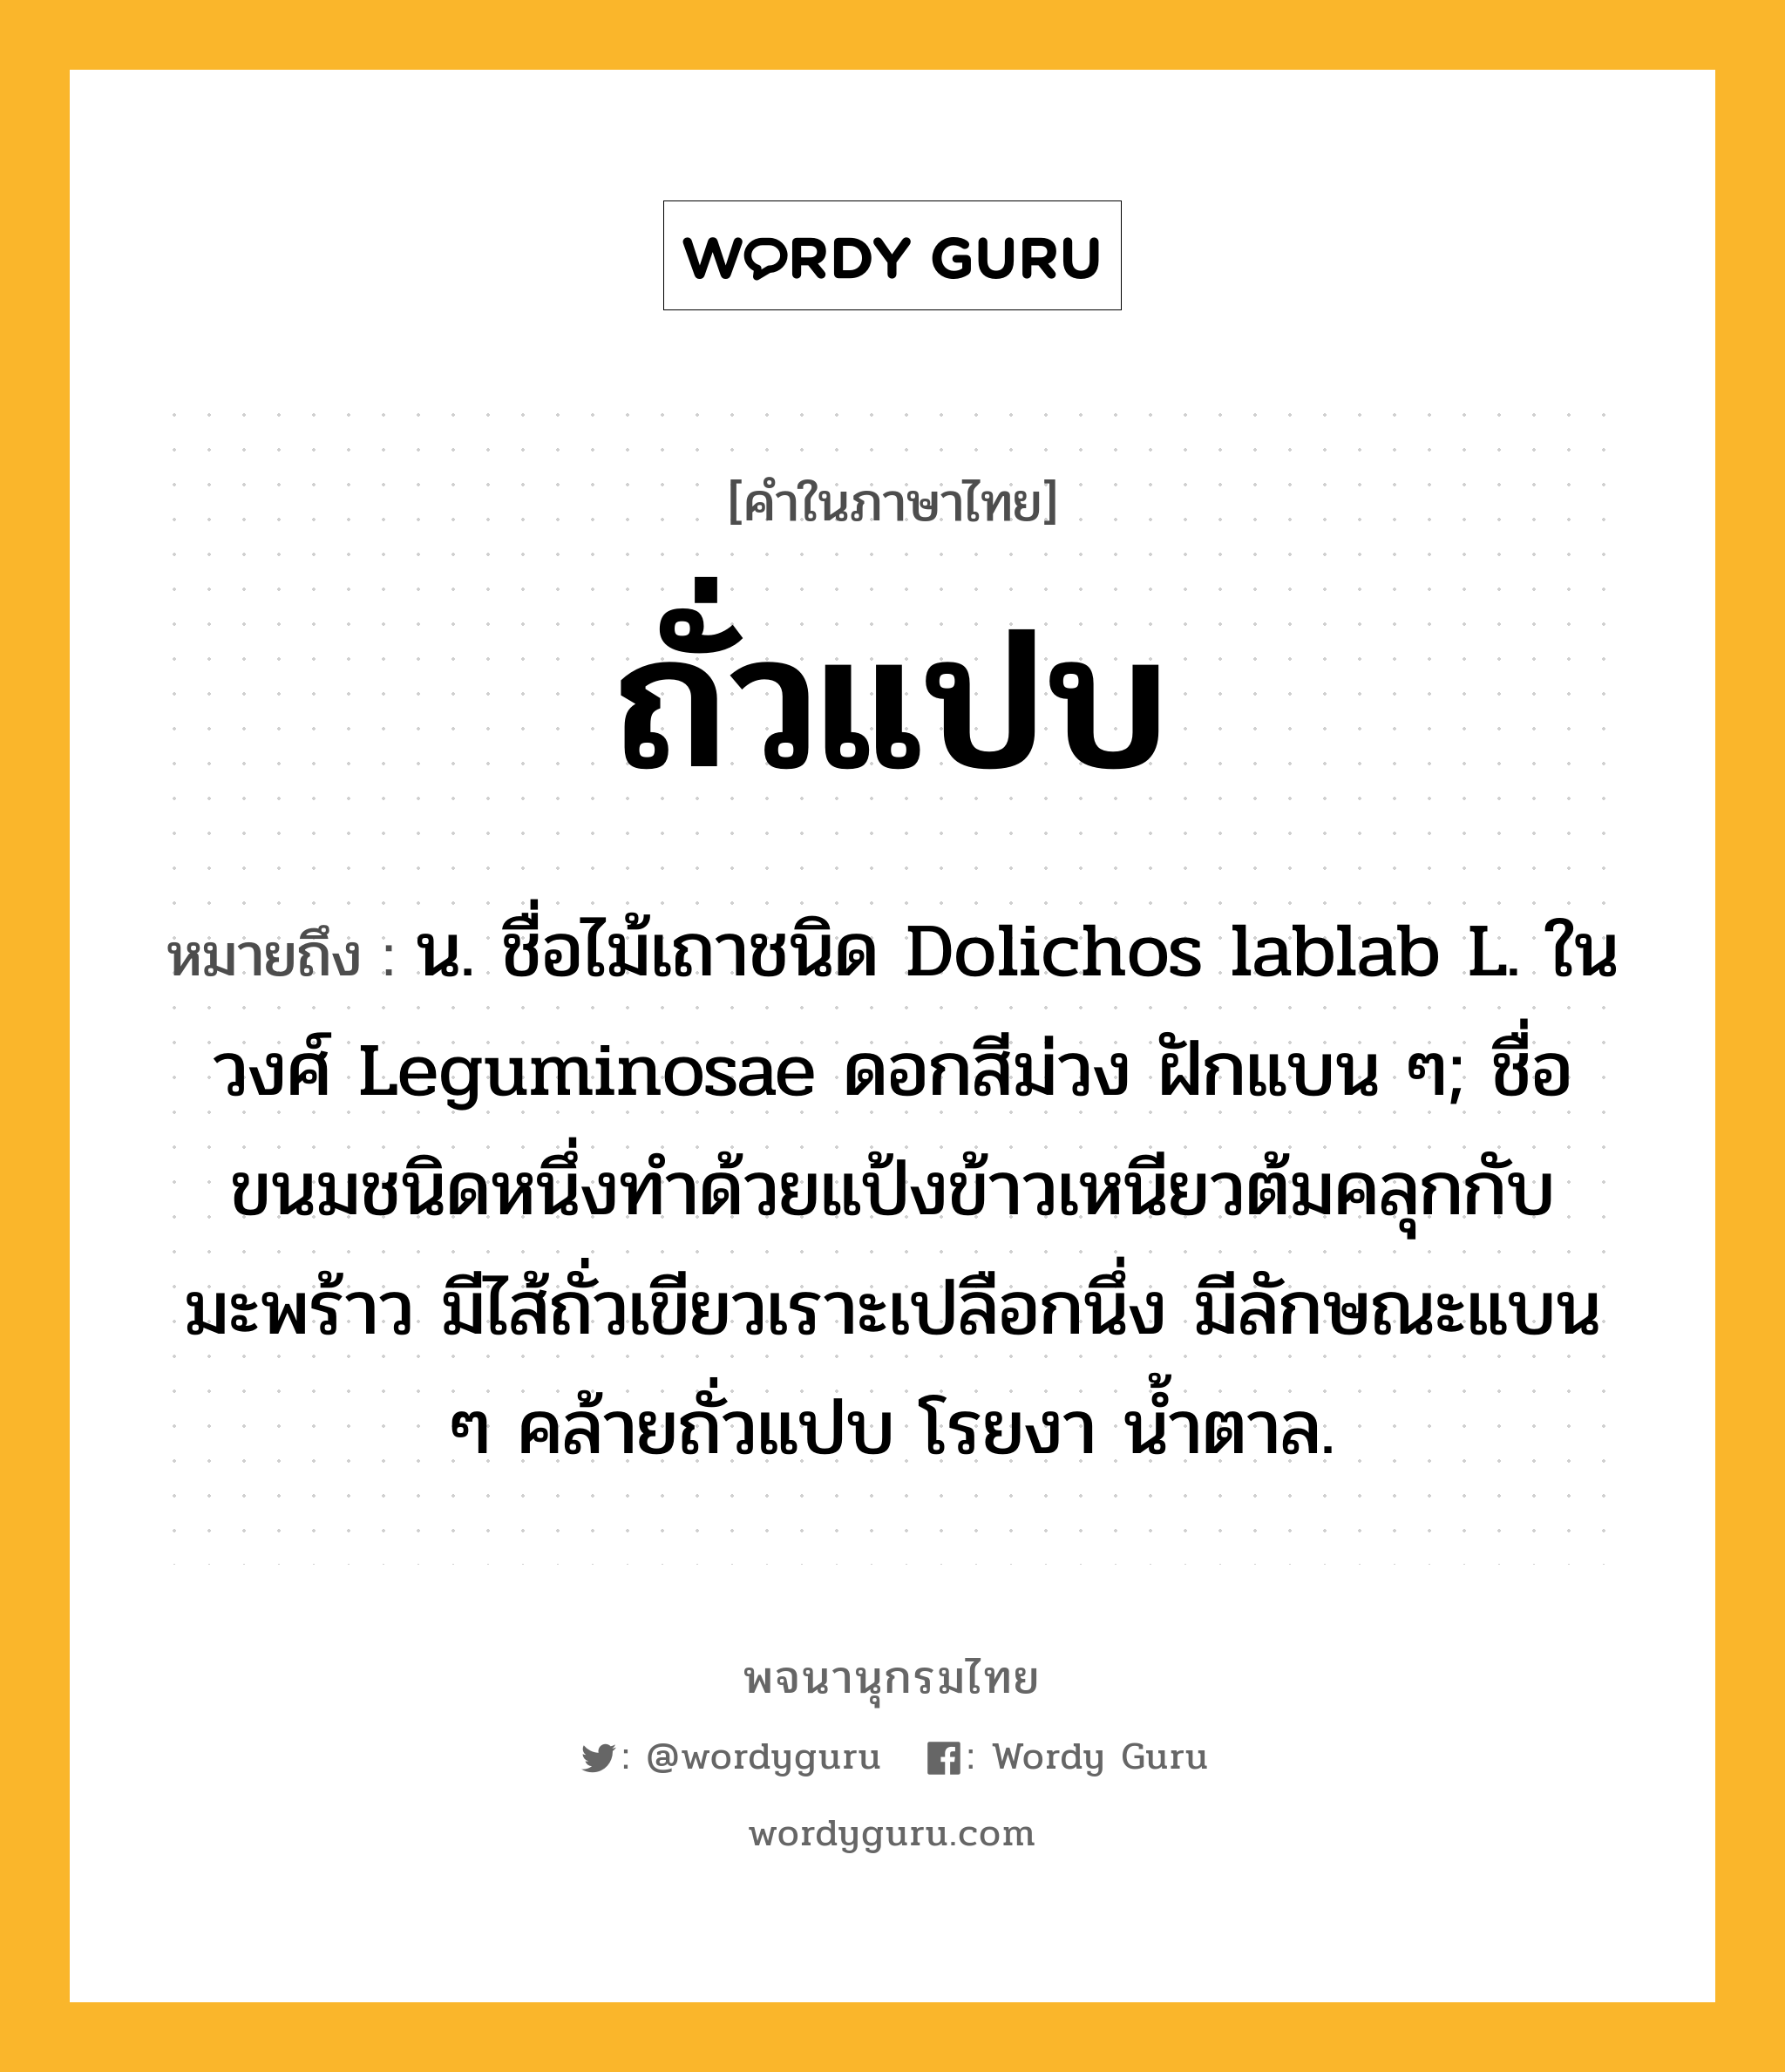 ถั่วแปบ หมายถึงอะไร?, คำในภาษาไทย ถั่วแปบ หมายถึง น. ชื่อไม้เถาชนิด Dolichos lablab L. ในวงศ์ Leguminosae ดอกสีม่วง ฝักแบน ๆ; ชื่อขนมชนิดหนึ่งทําด้วยแป้งข้าวเหนียวต้มคลุกกับมะพร้าว มีไส้ถั่วเขียวเราะเปลือกนึ่ง มีลักษณะแบน ๆ คล้ายถั่วแปบ โรยงา นํ้าตาล.